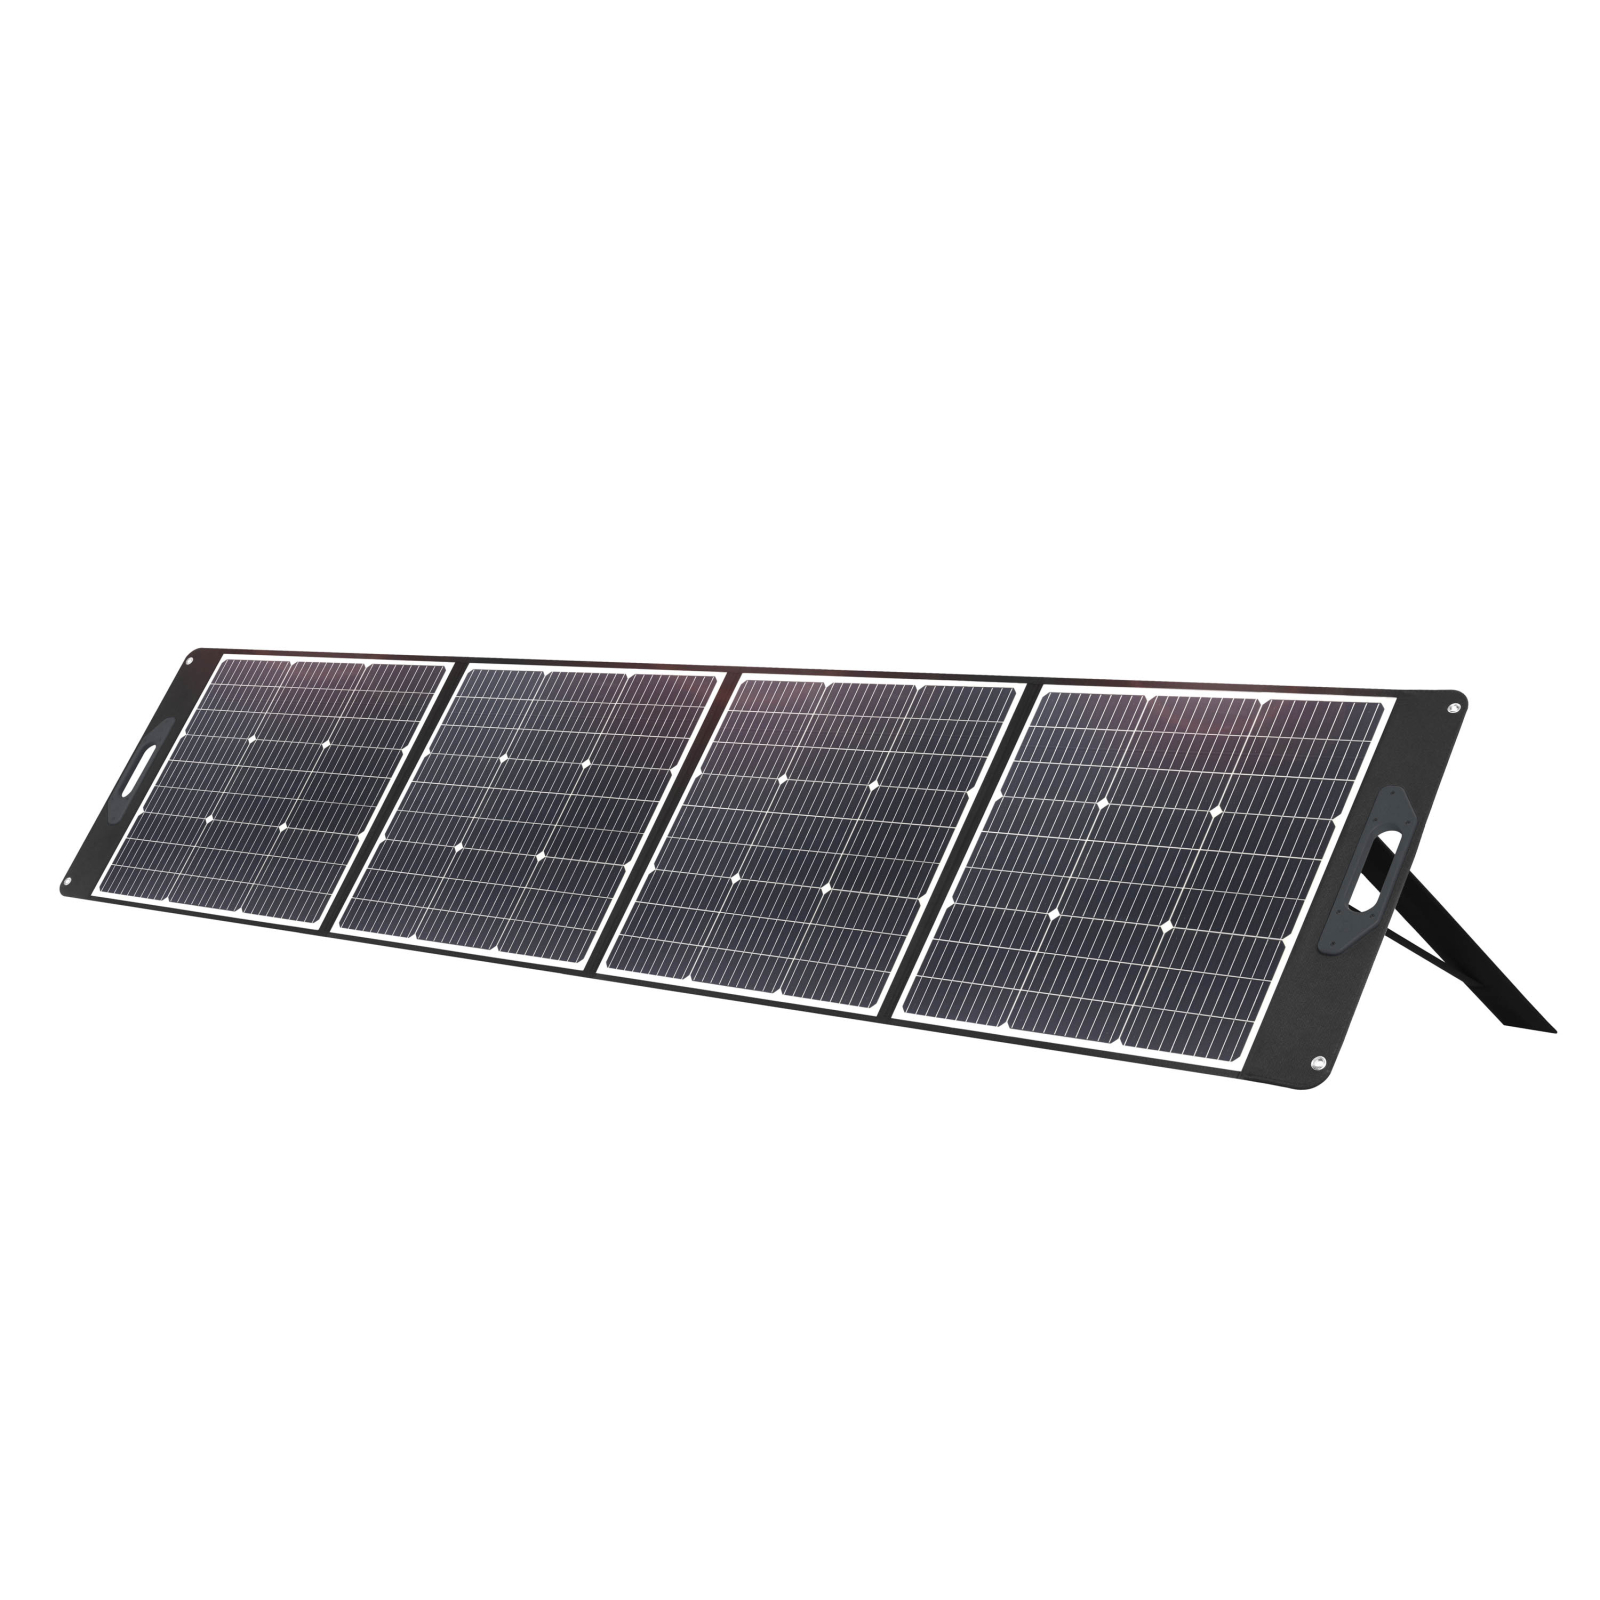 Портативна сонячна панель 2E 250 Вт, 4S, 3M MC4/Anderson (2E-PSPLW250)